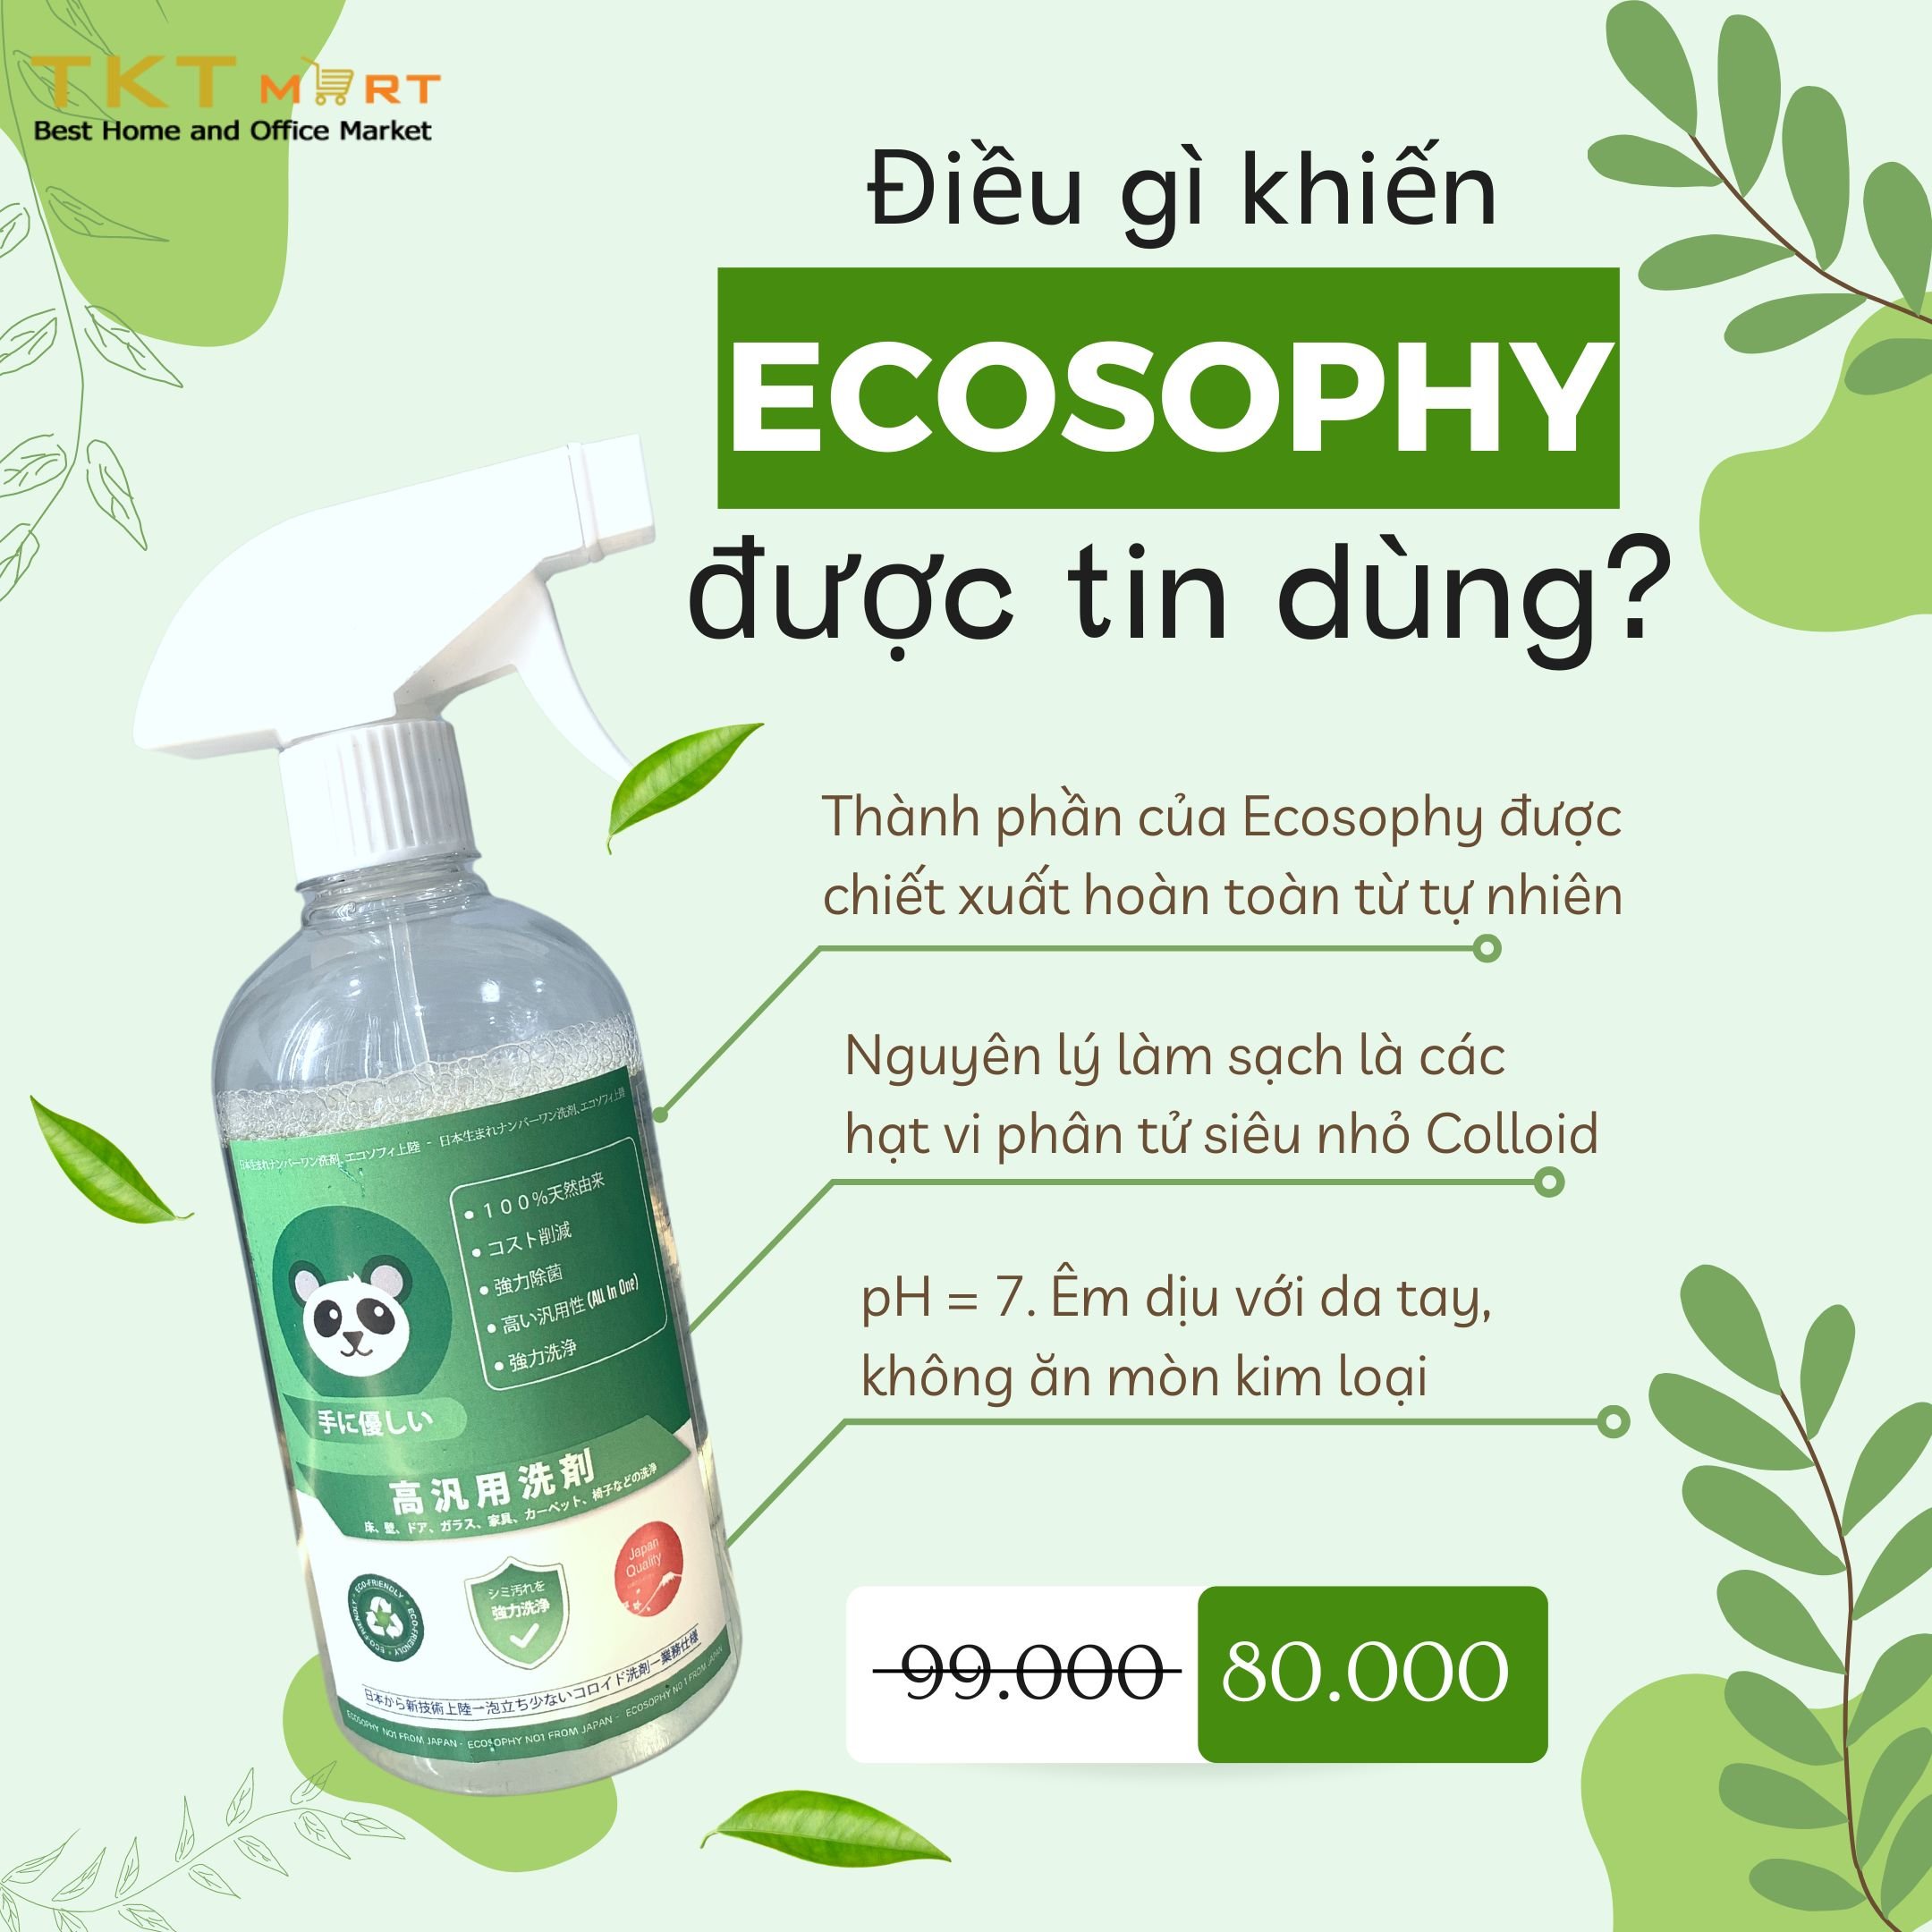 Hình ảnh: Những ưu điểm của hóa chất tẩy rửa đa năng Ecosophy